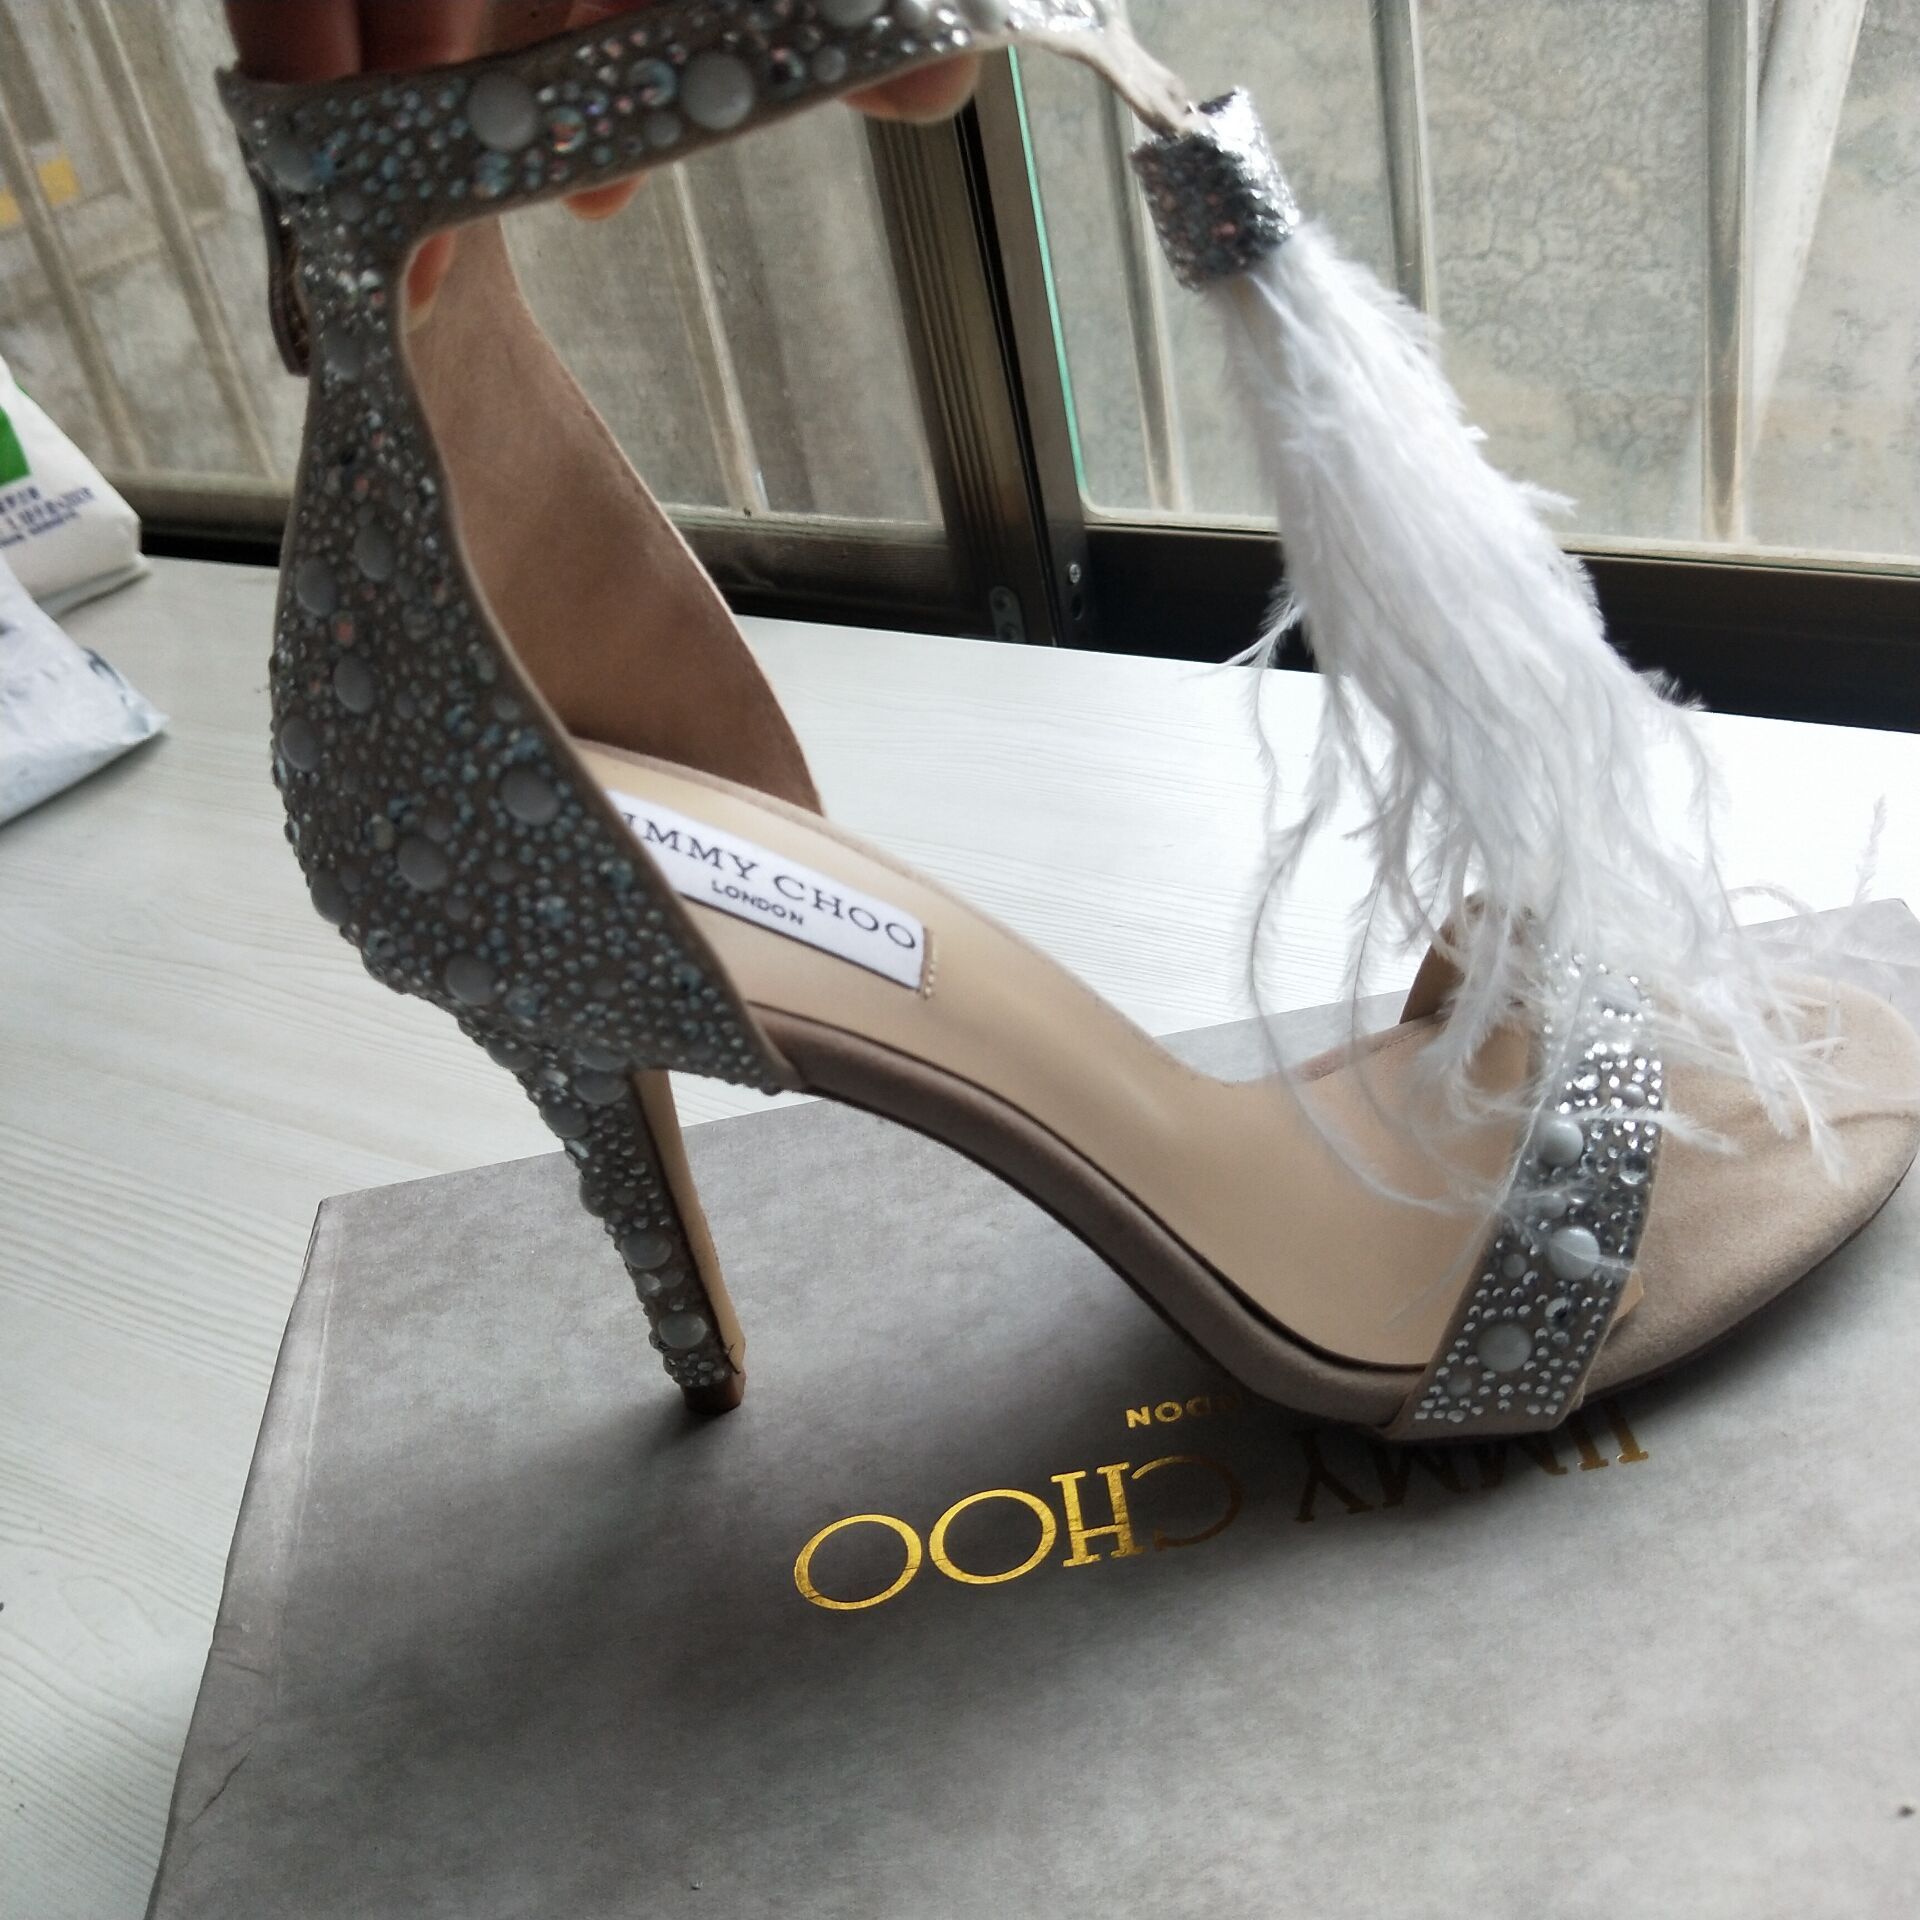 wedding shoes 4 inch heel